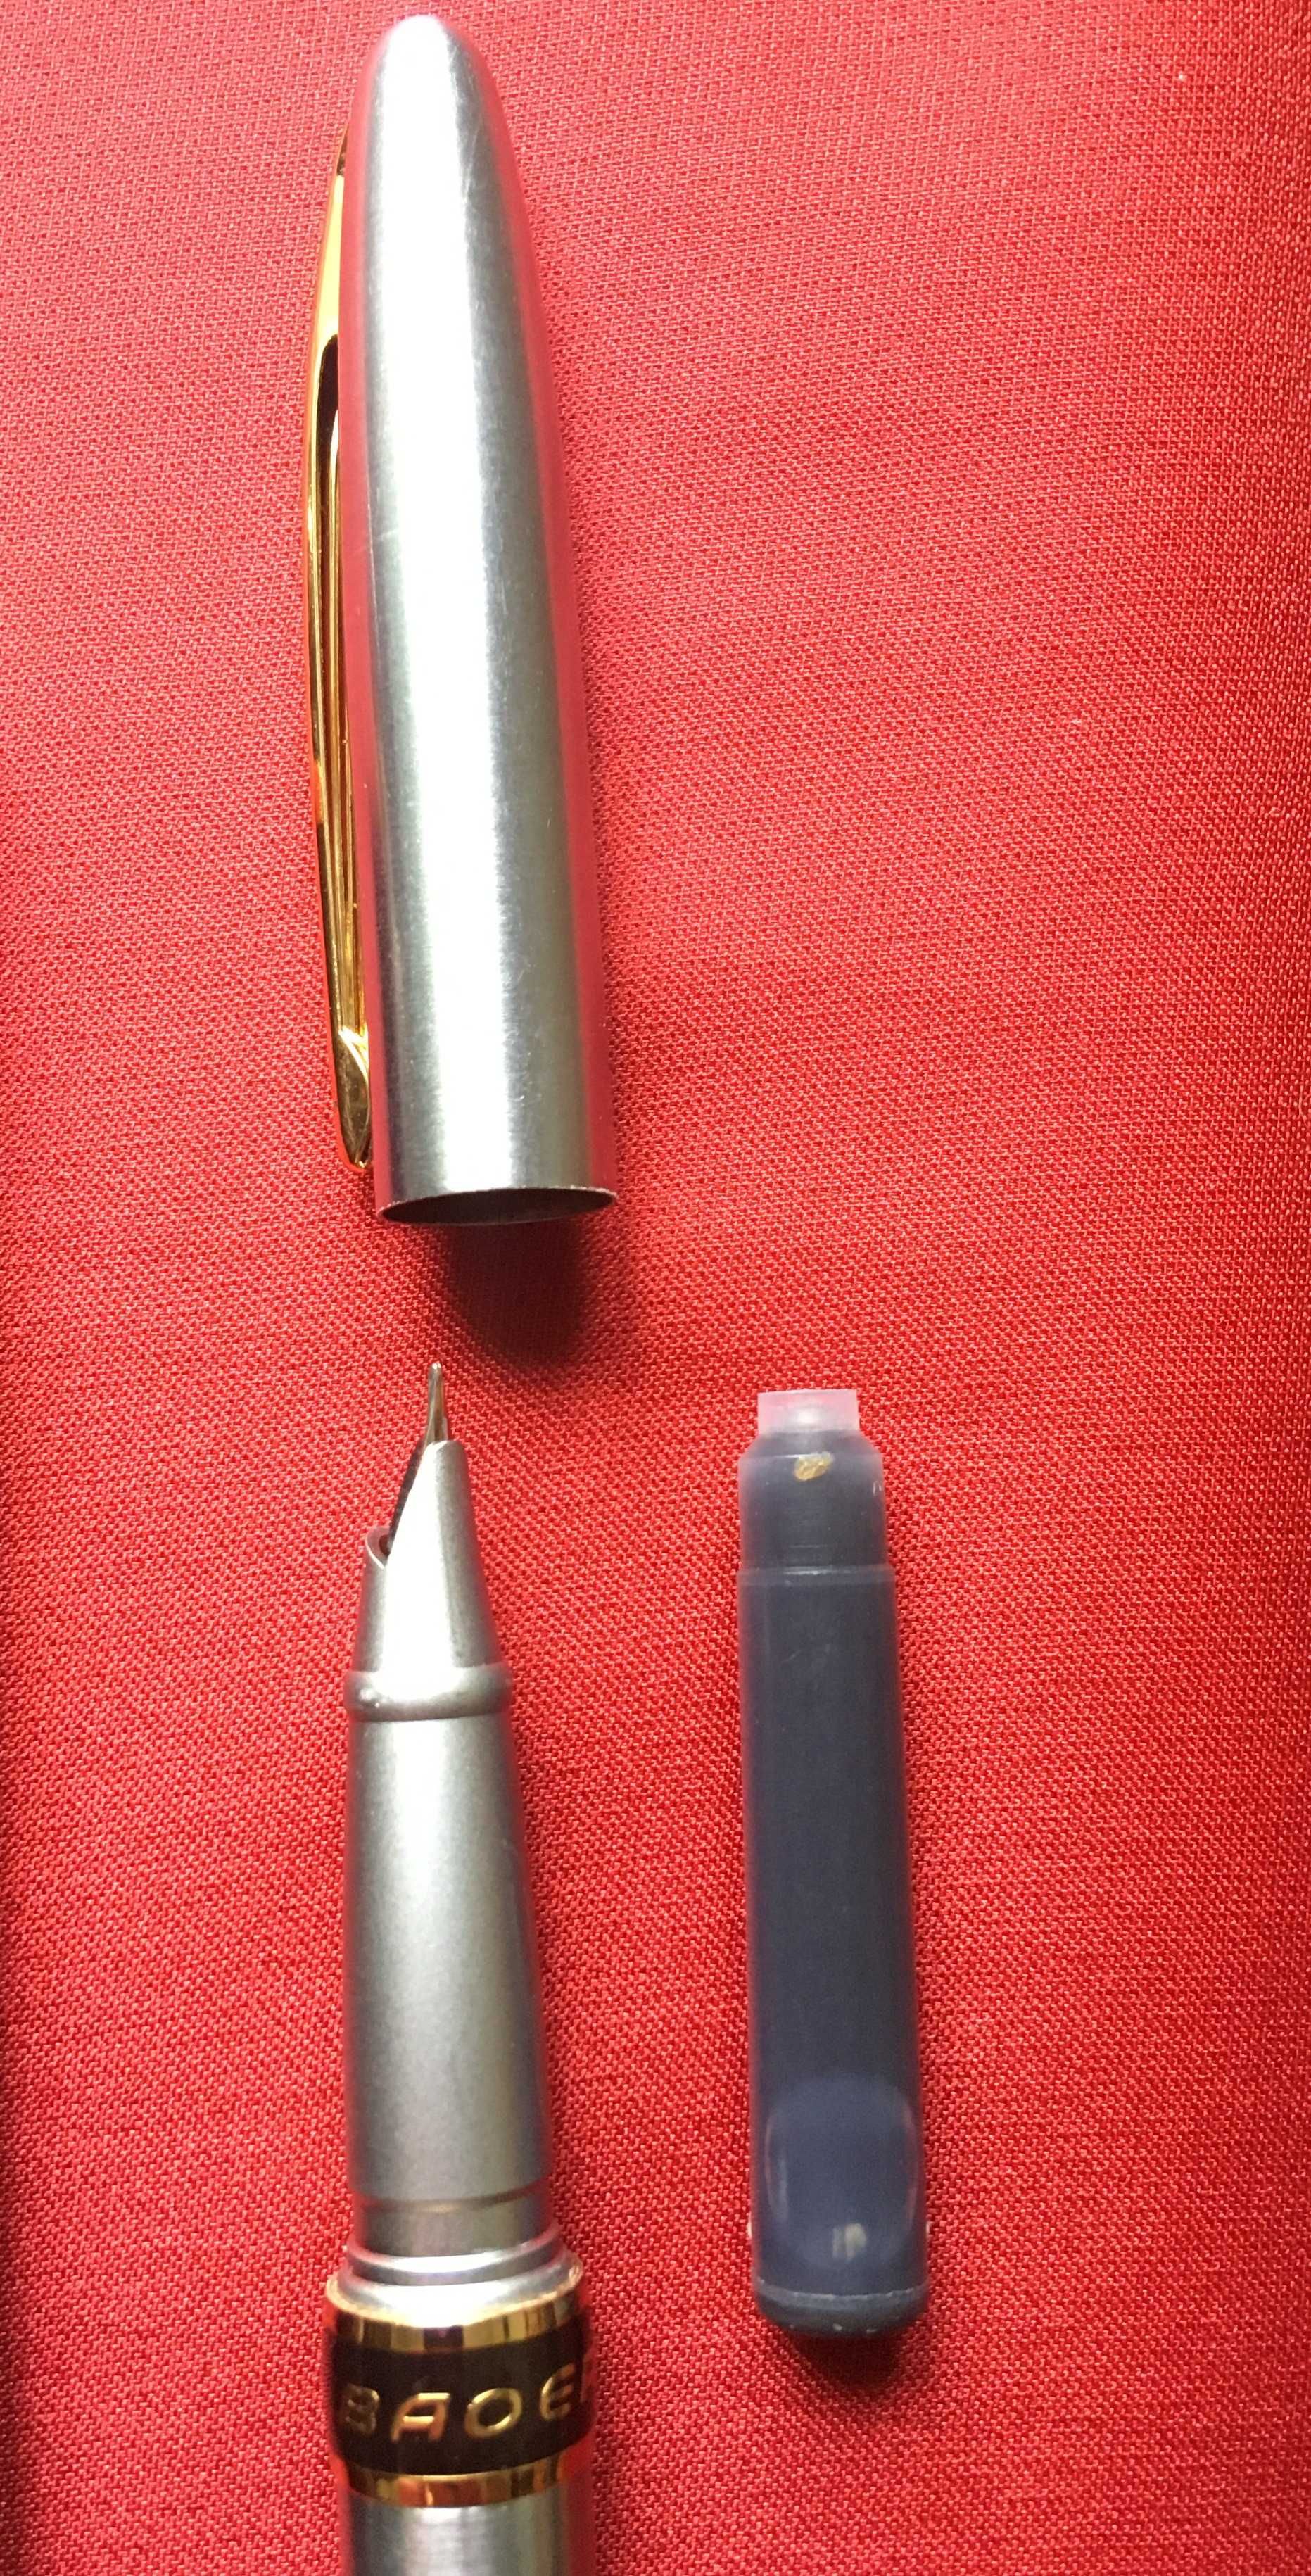 Ручки металлические